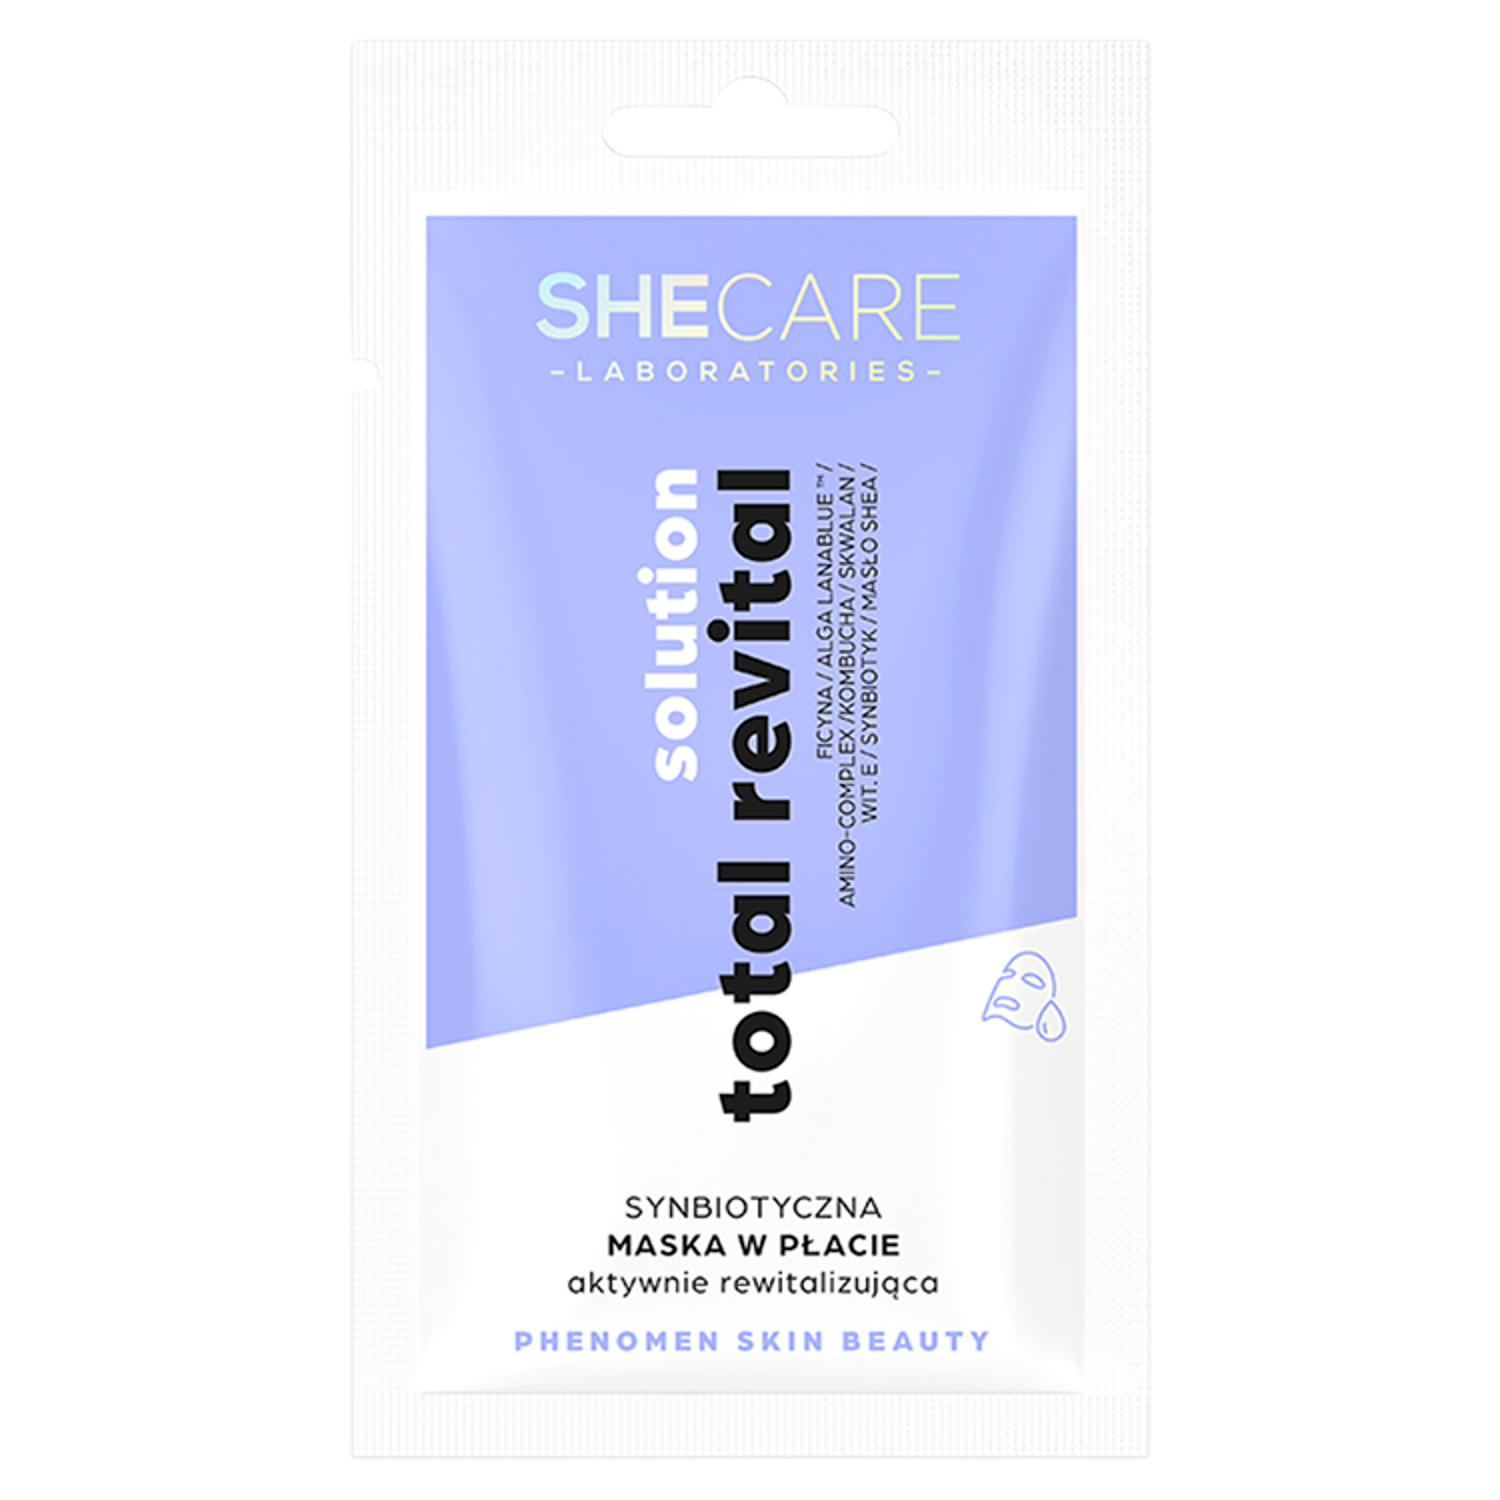 Shecare Total Revital Solution синбиотическая тканевая маска активно оздоравливающая для лица, 1 шт.